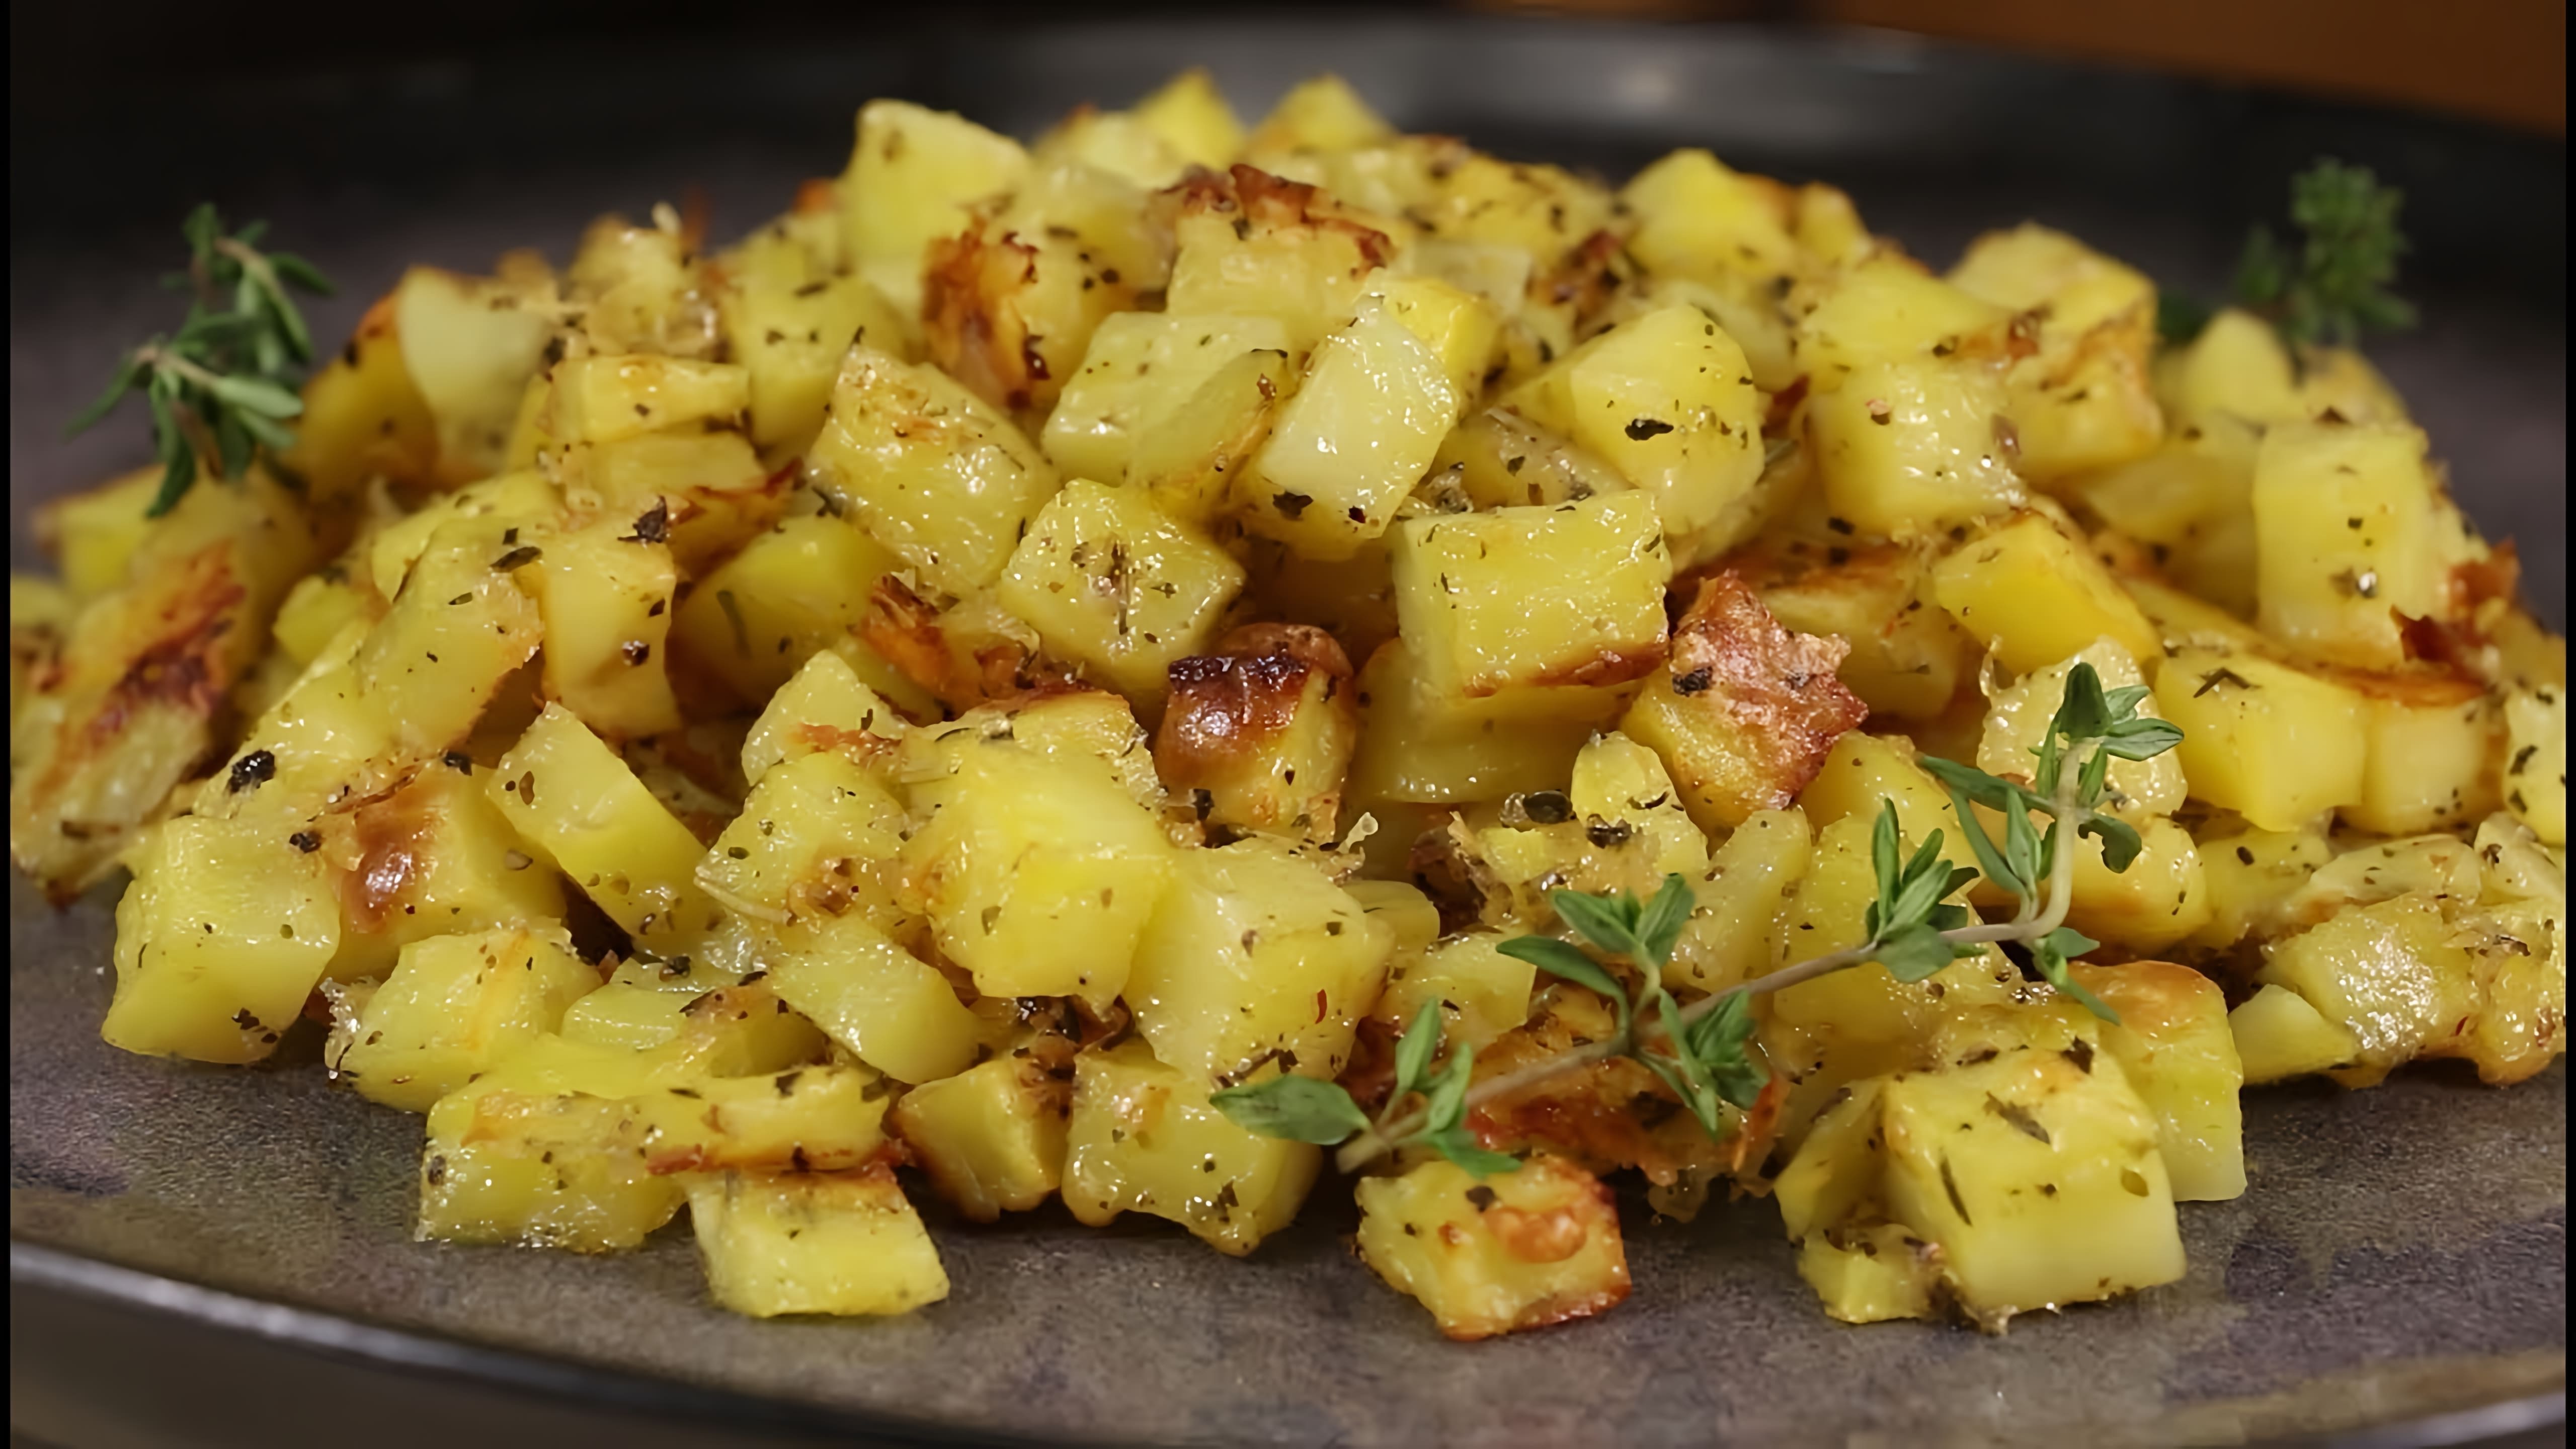 В этом видео демонстрируется рецепт приготовления картофеля "Паутинка" в духовке